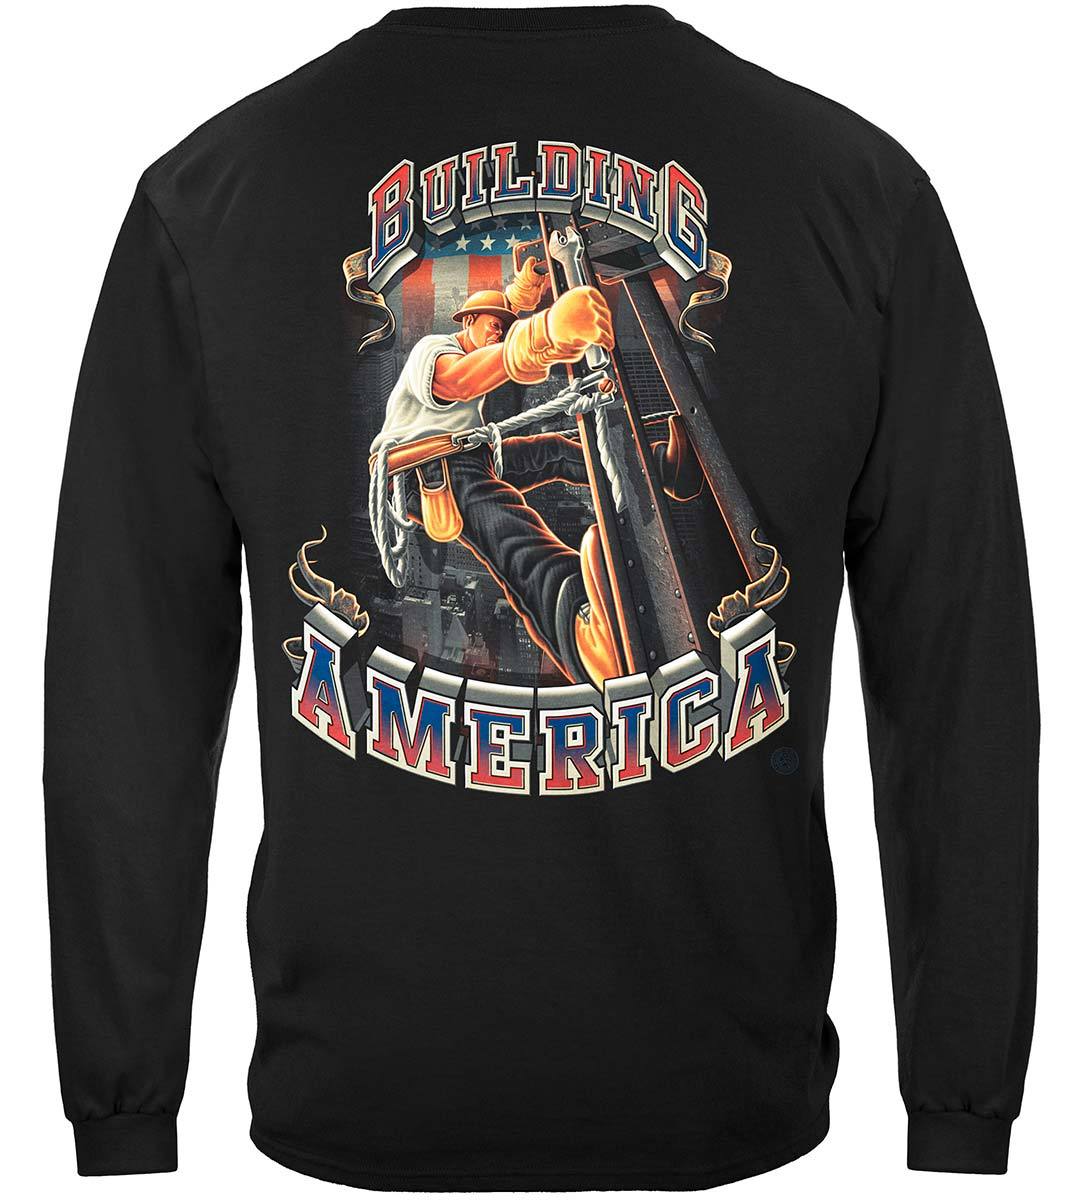 American Iron Worker Premium Long Sleeves